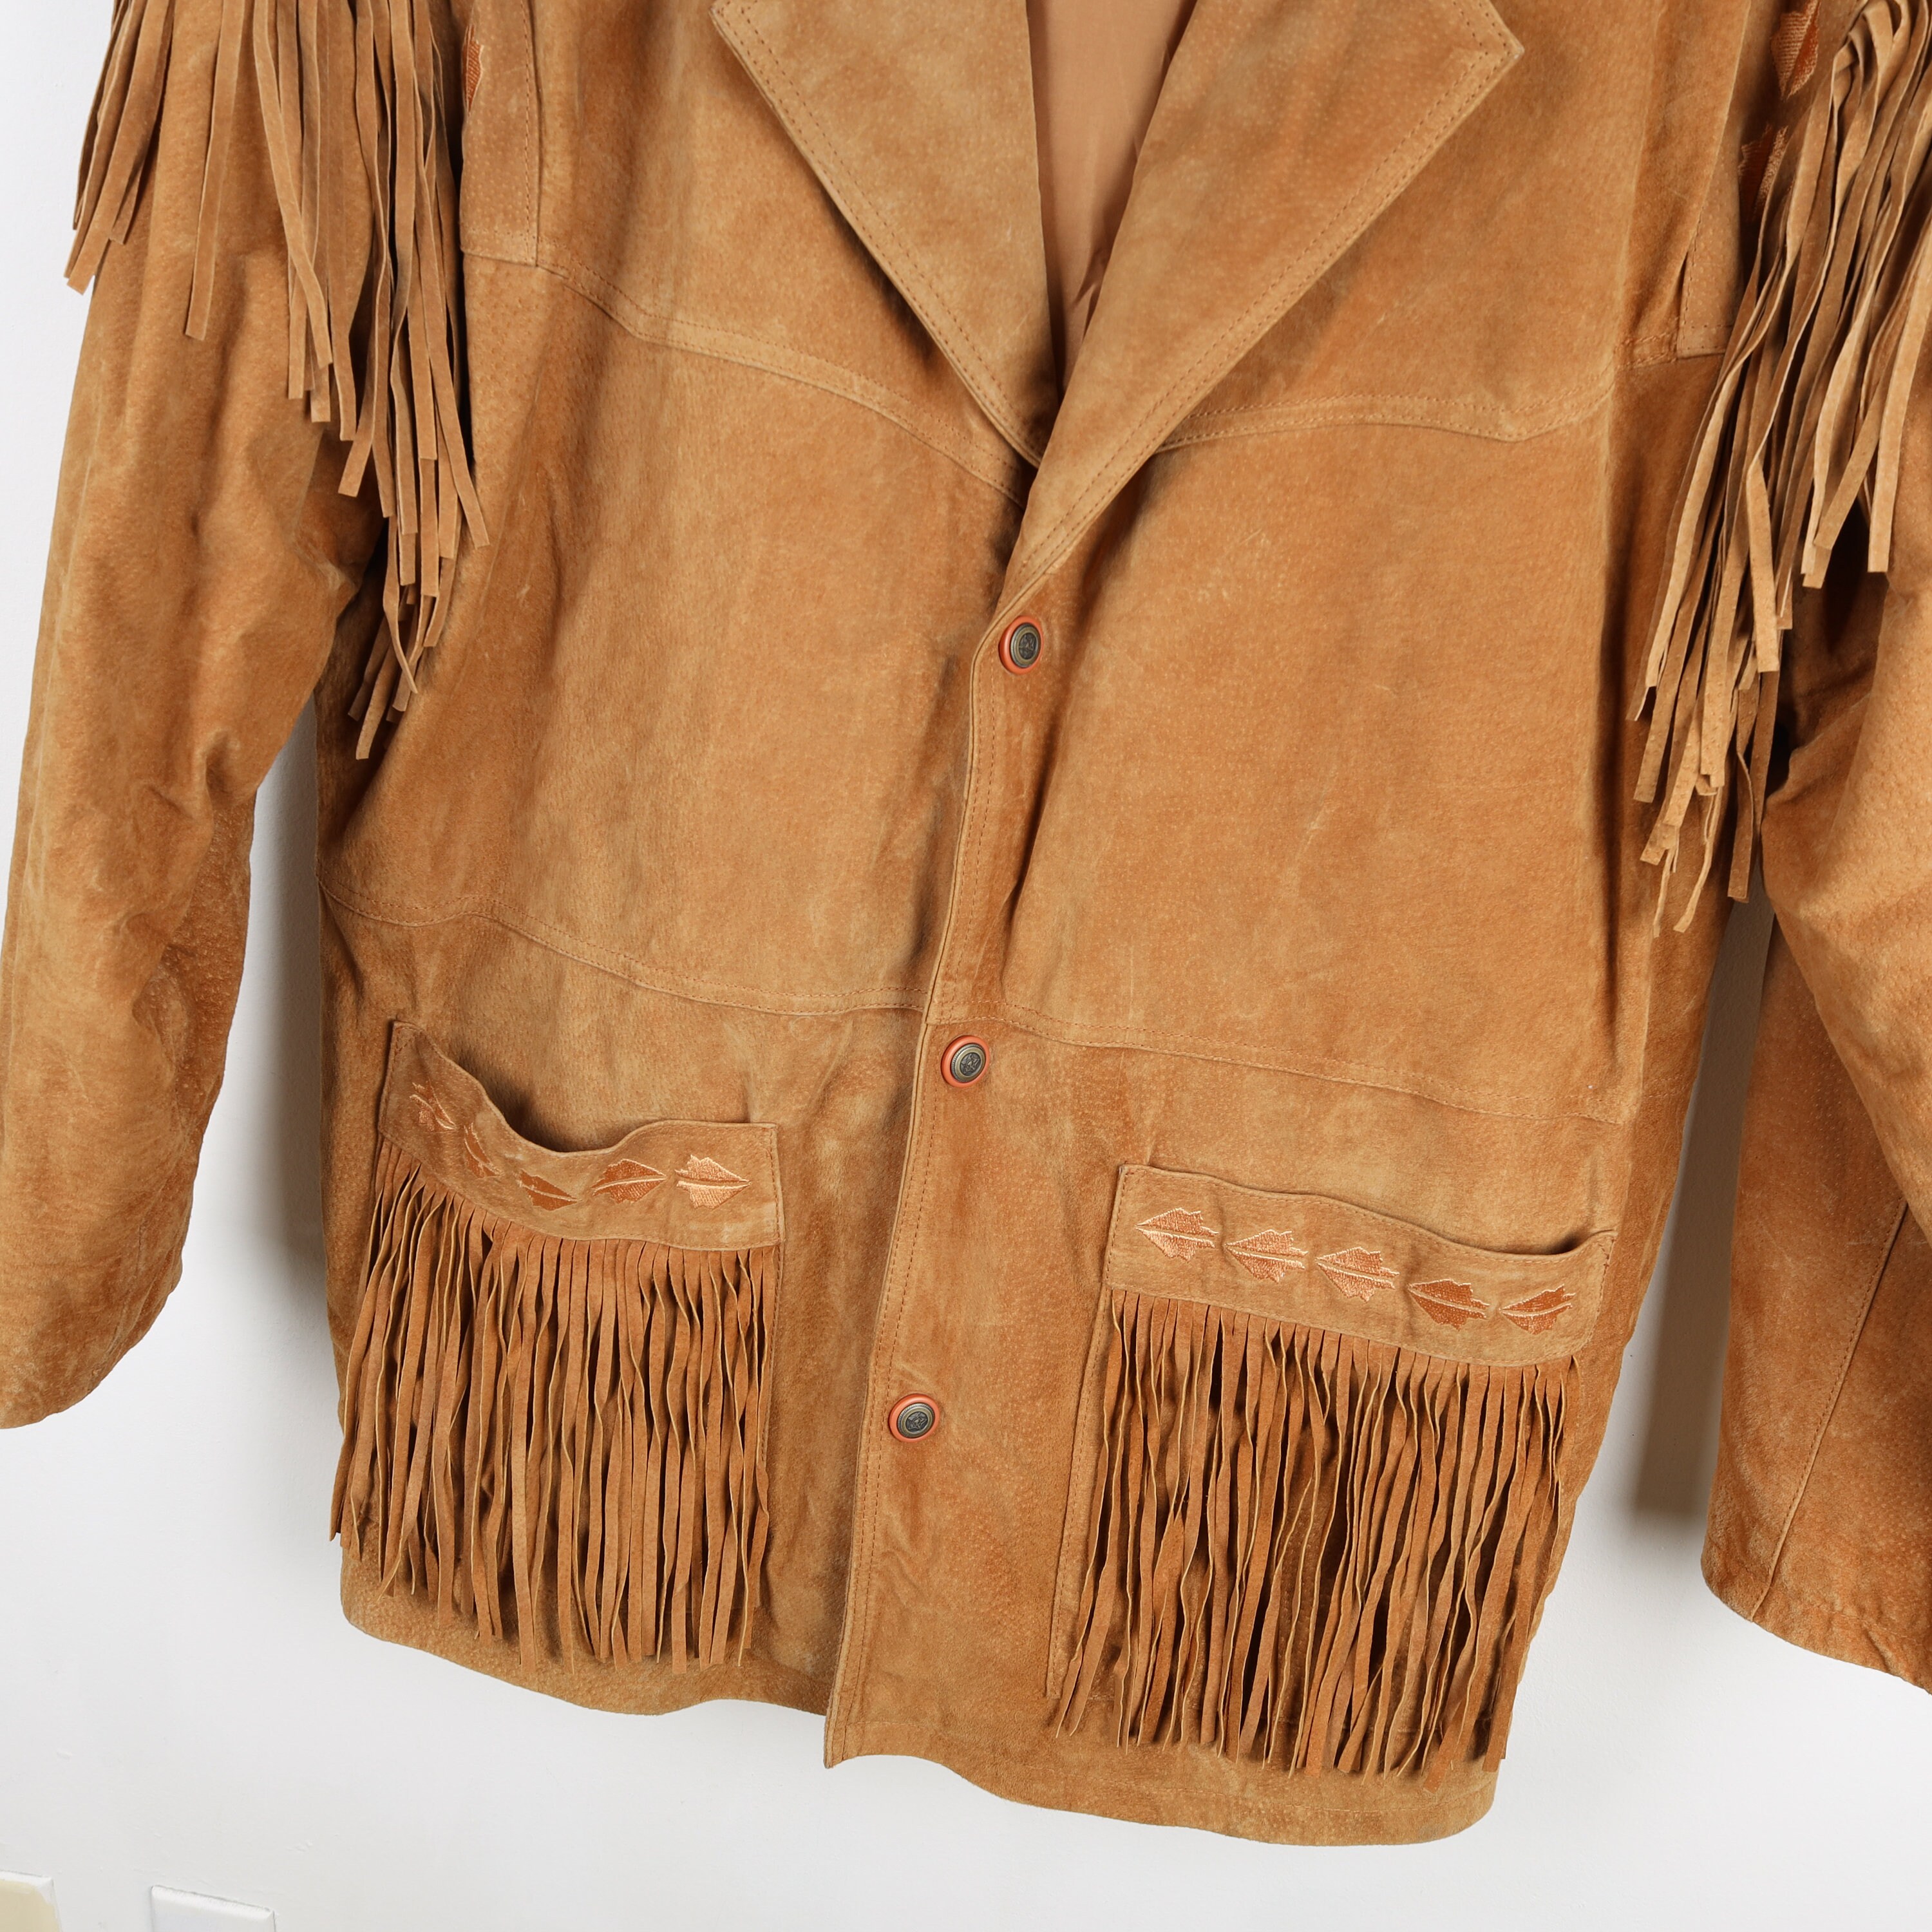 ROCK ON STILLWATER Vintage Genuine Tan Suede Leather Fringe Jacket